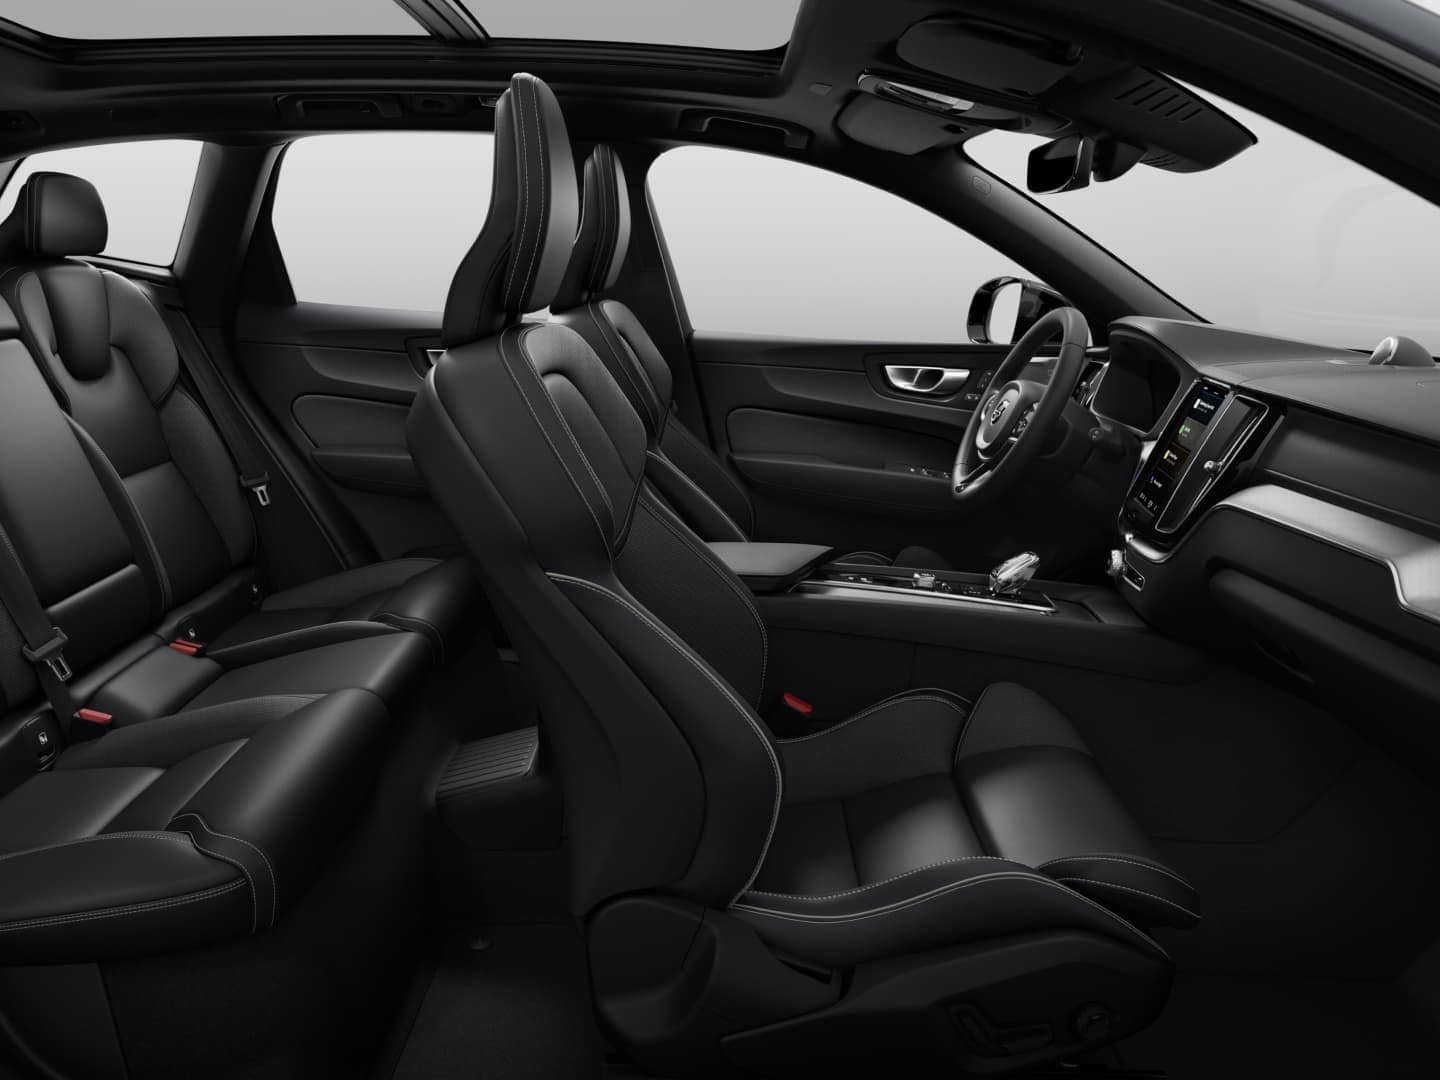 Čalounění a panoramatická střecha mild hybridního vozu Volvo XC60 Black Edition.